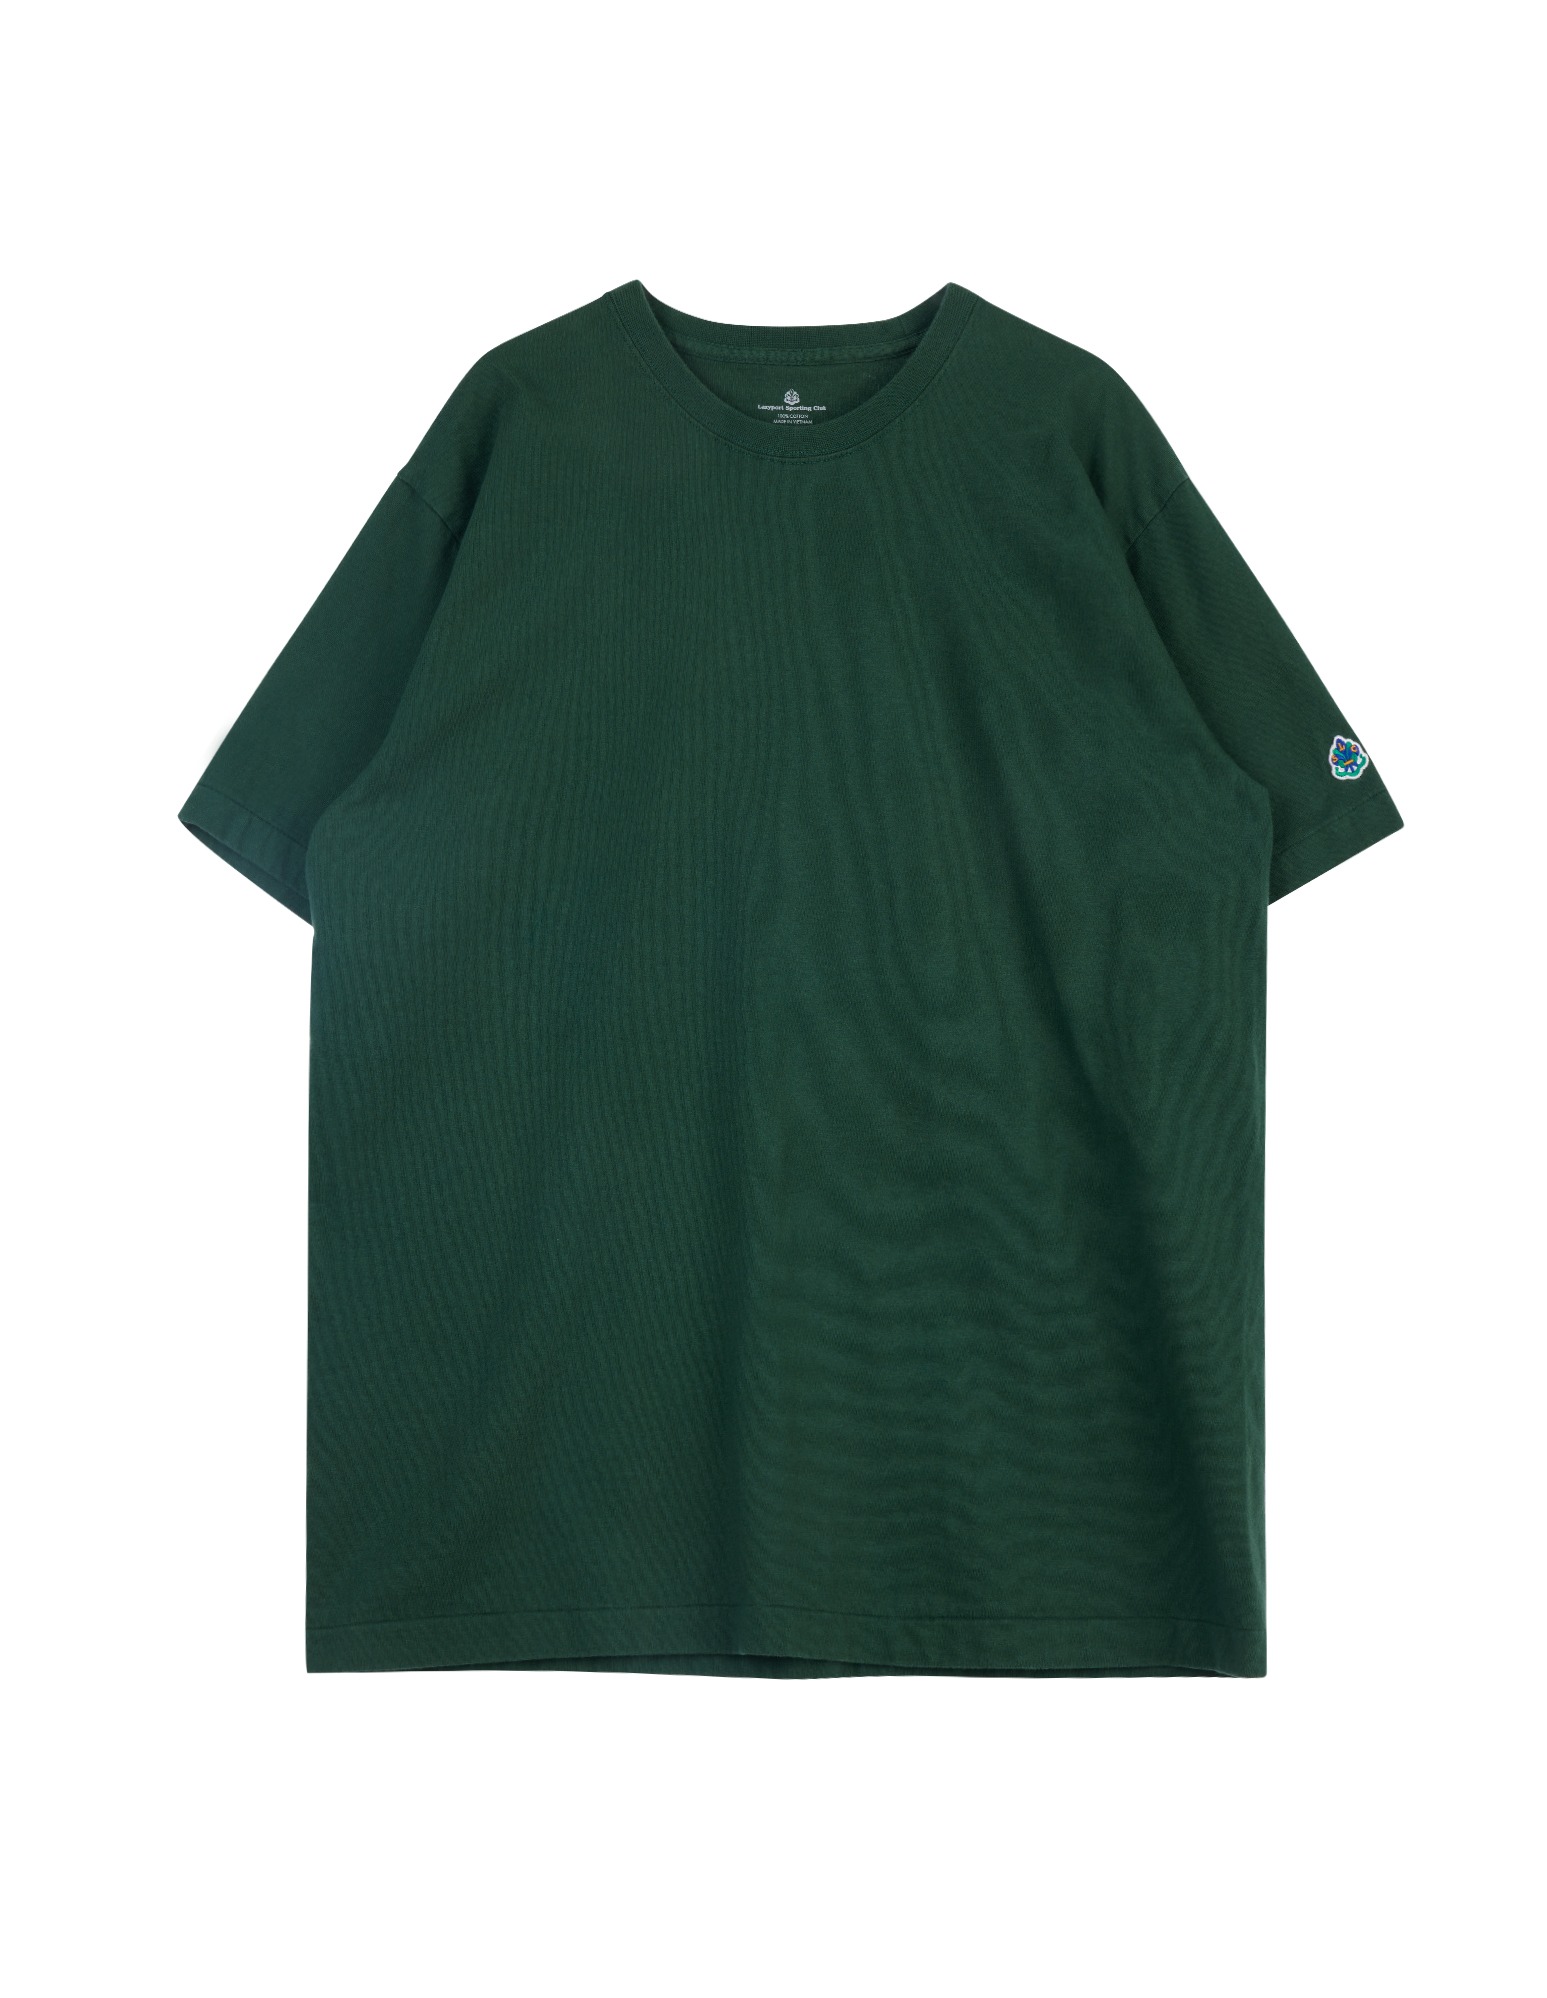 LSC Tubular T Shirt (Green)